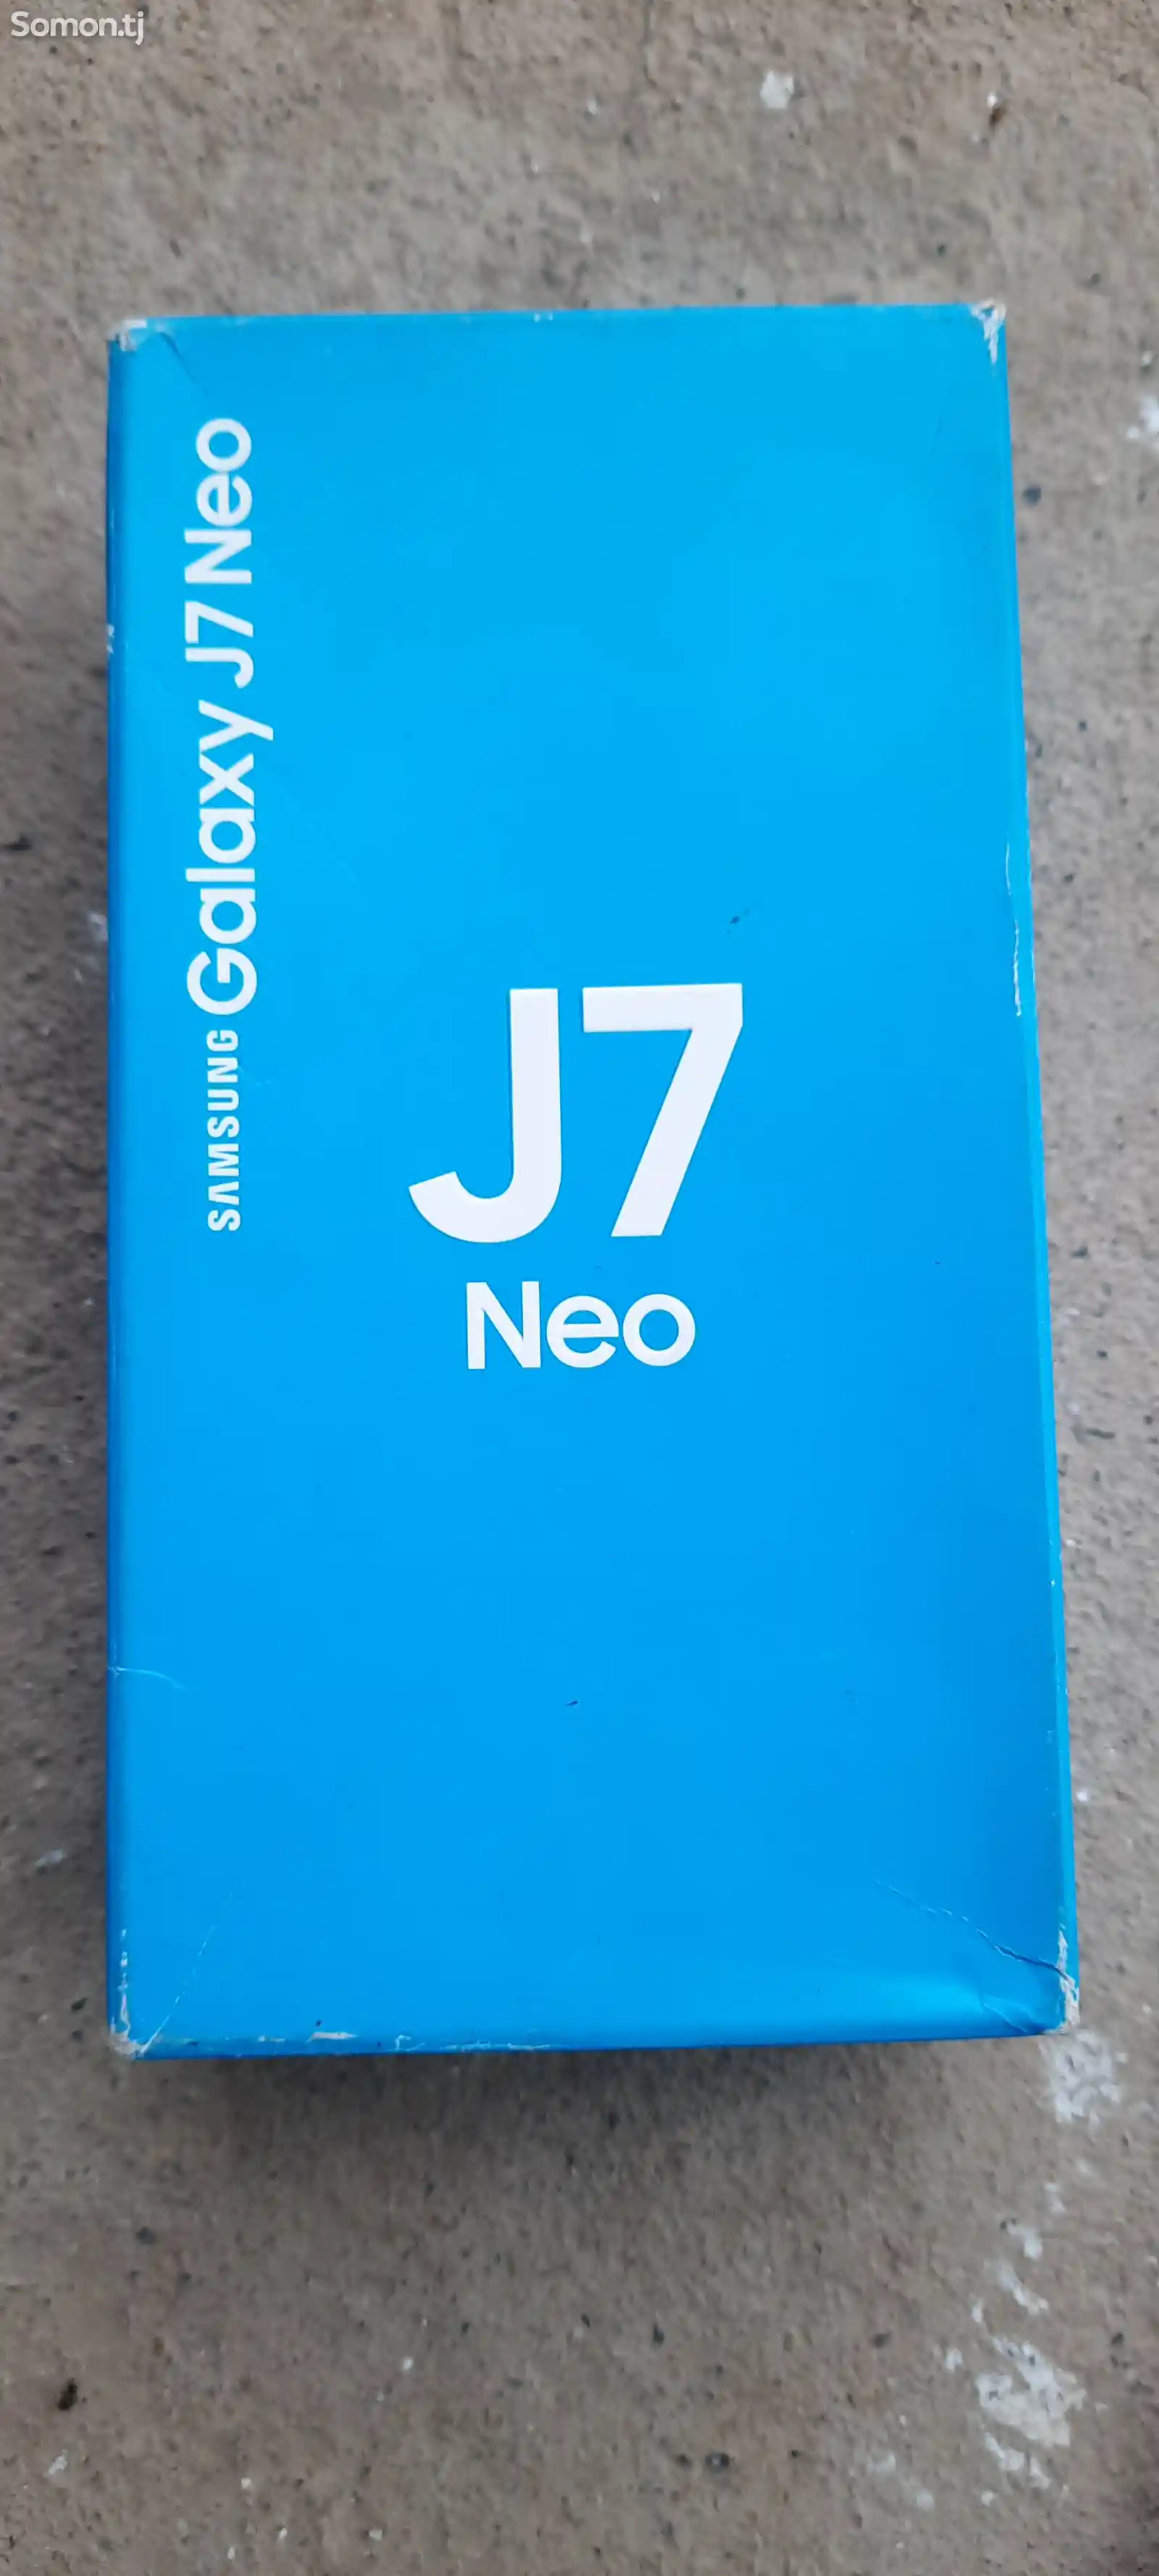 Samsung Galaxy J7 neo-3